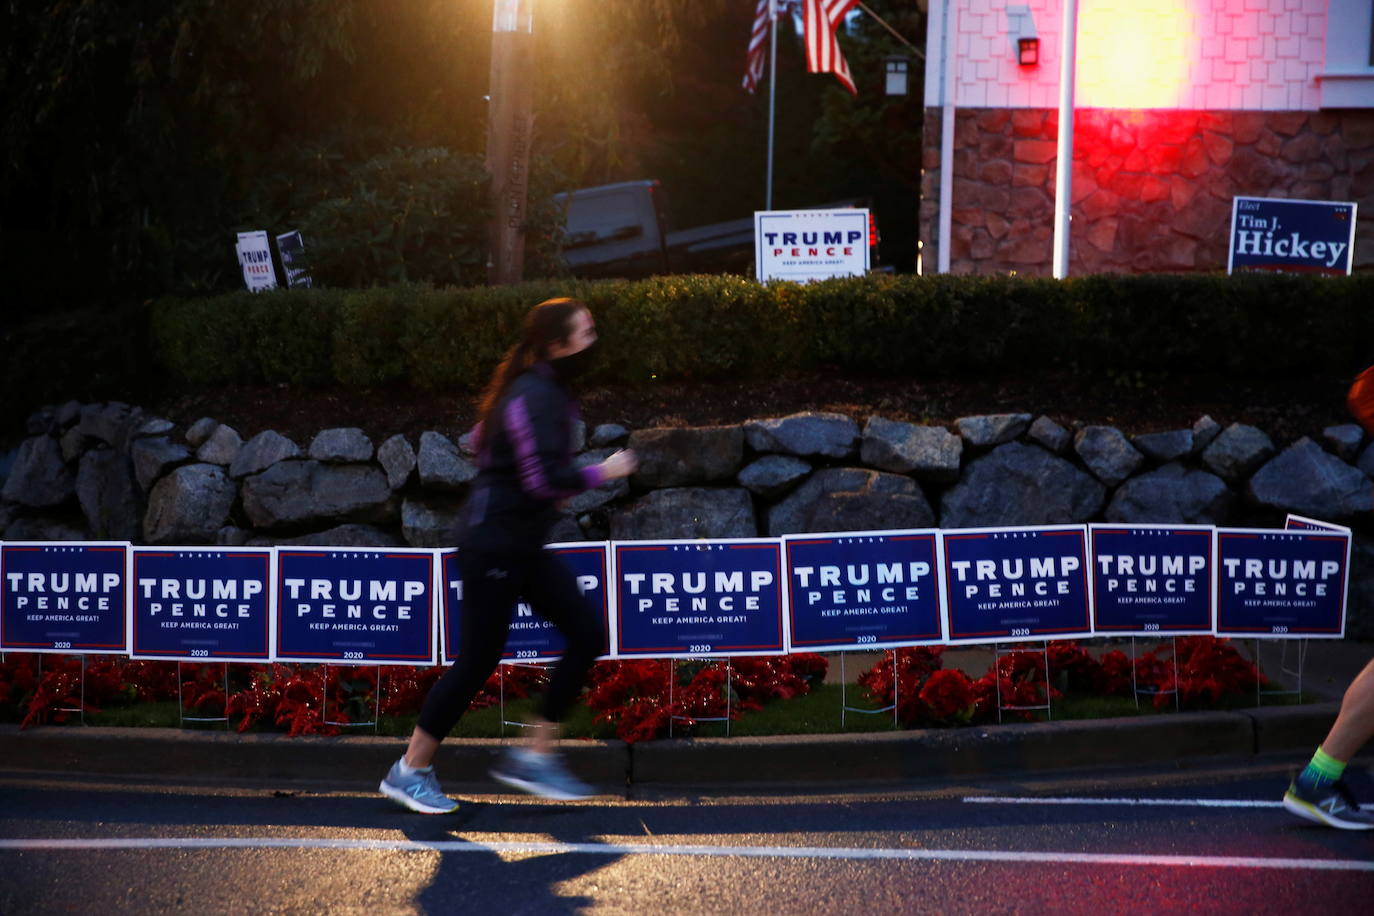 Una casa decorada con carteles de Trump / Pence en Kirkland, Washington. 